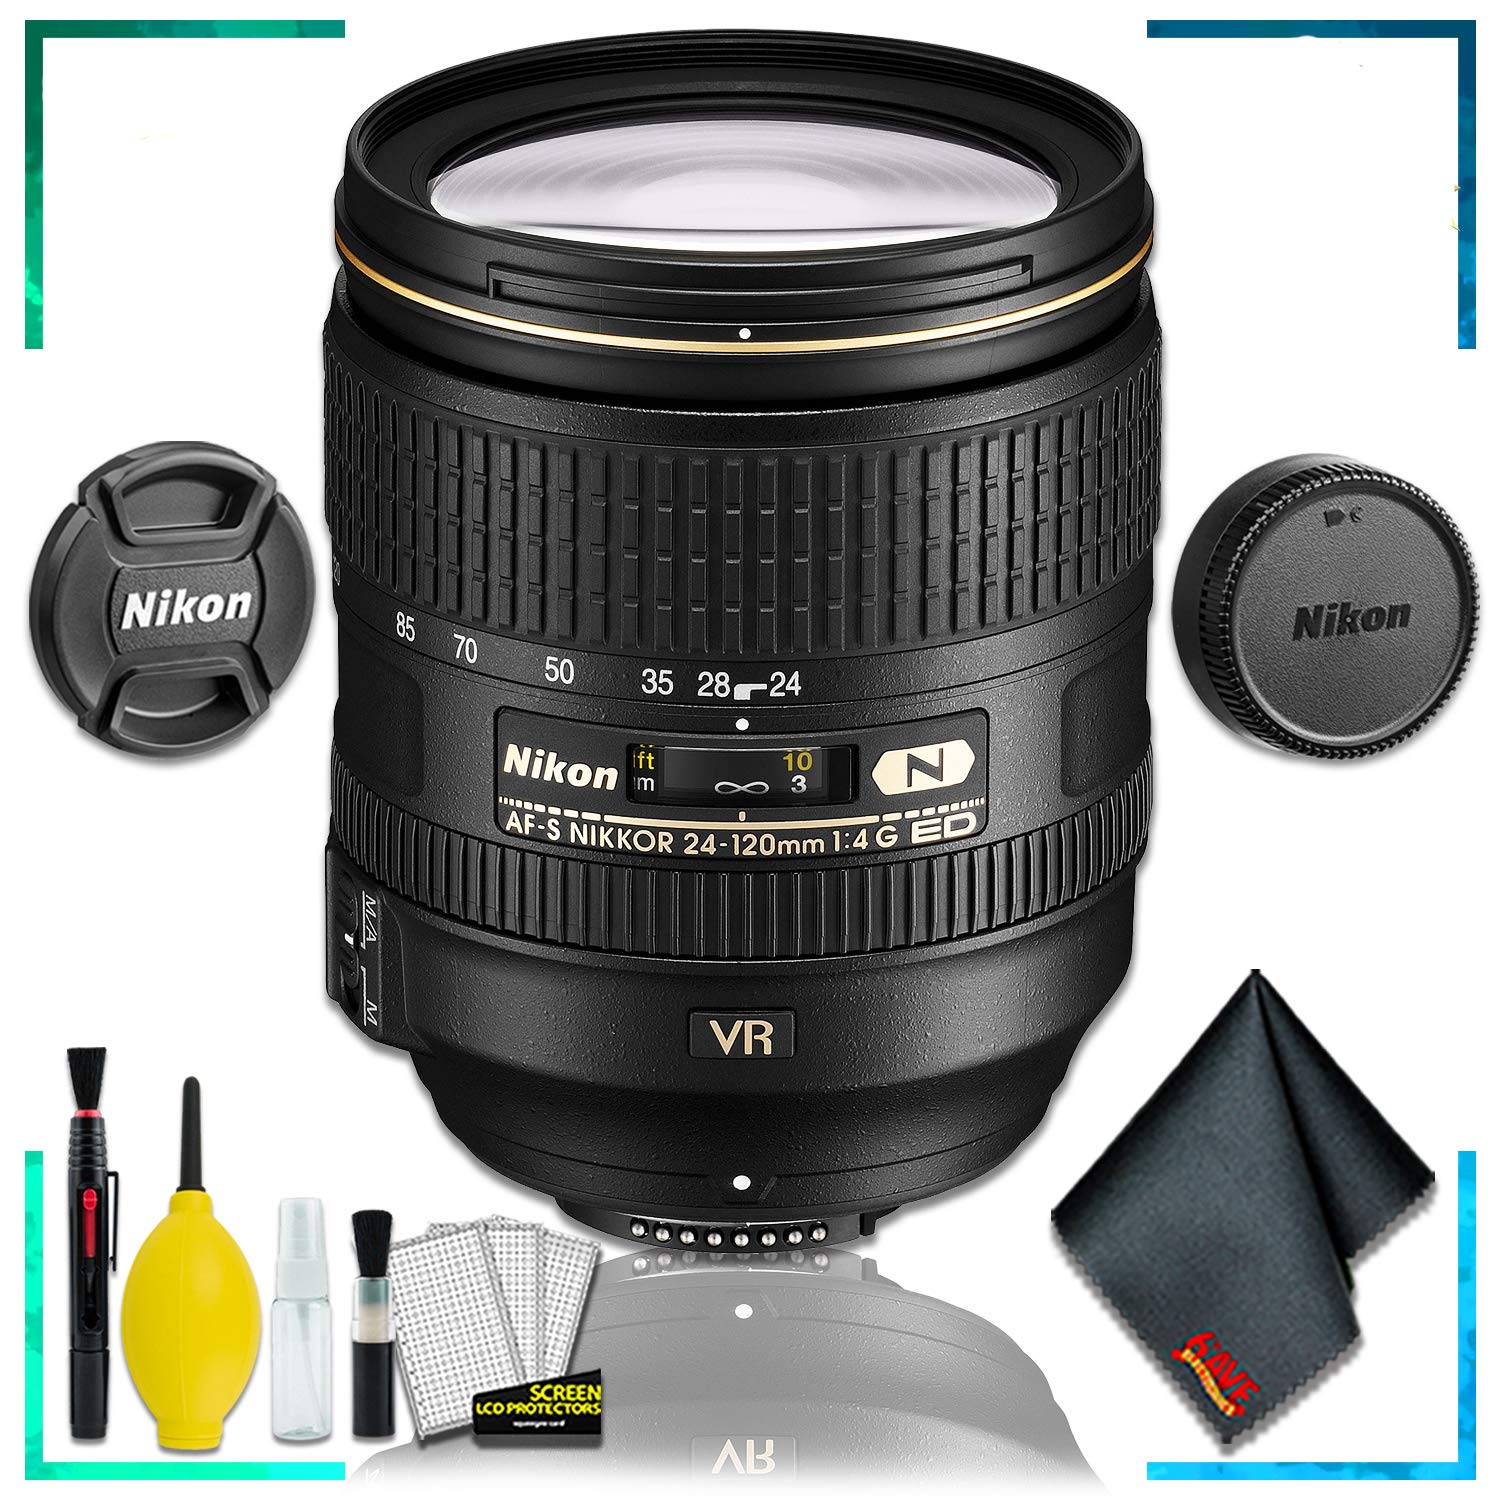 Nikon AF-S NIKKOR 24-120mm f.4G ED VR Lens (Intl Model) + Cleaning Kit